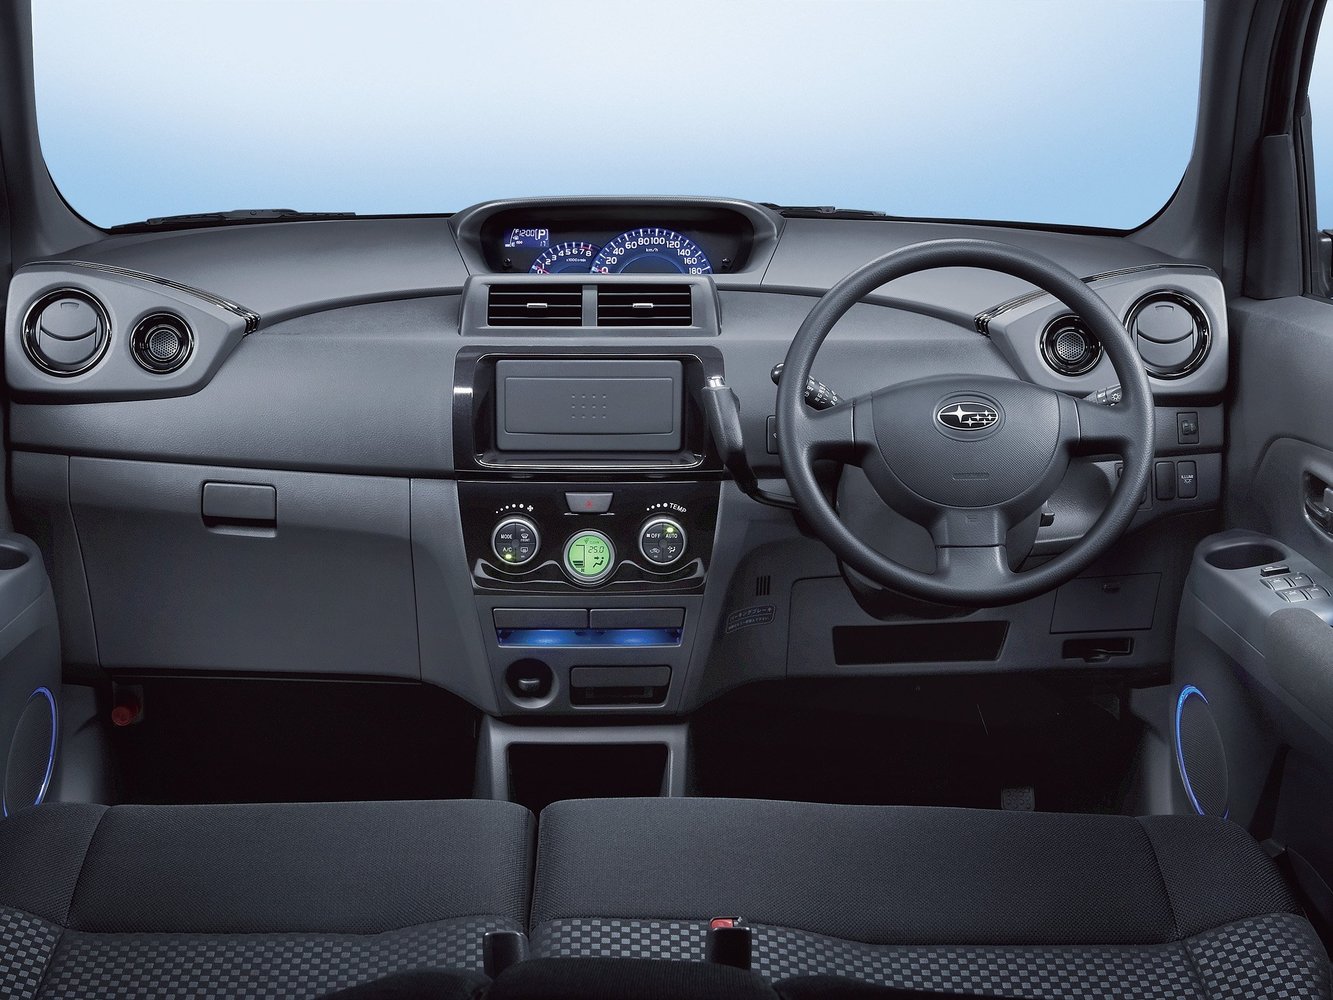 хэтчбек 5 дв. Subaru Dex 2008 - 2010г выпуска модификация 1.3 AT (94 л.с.)